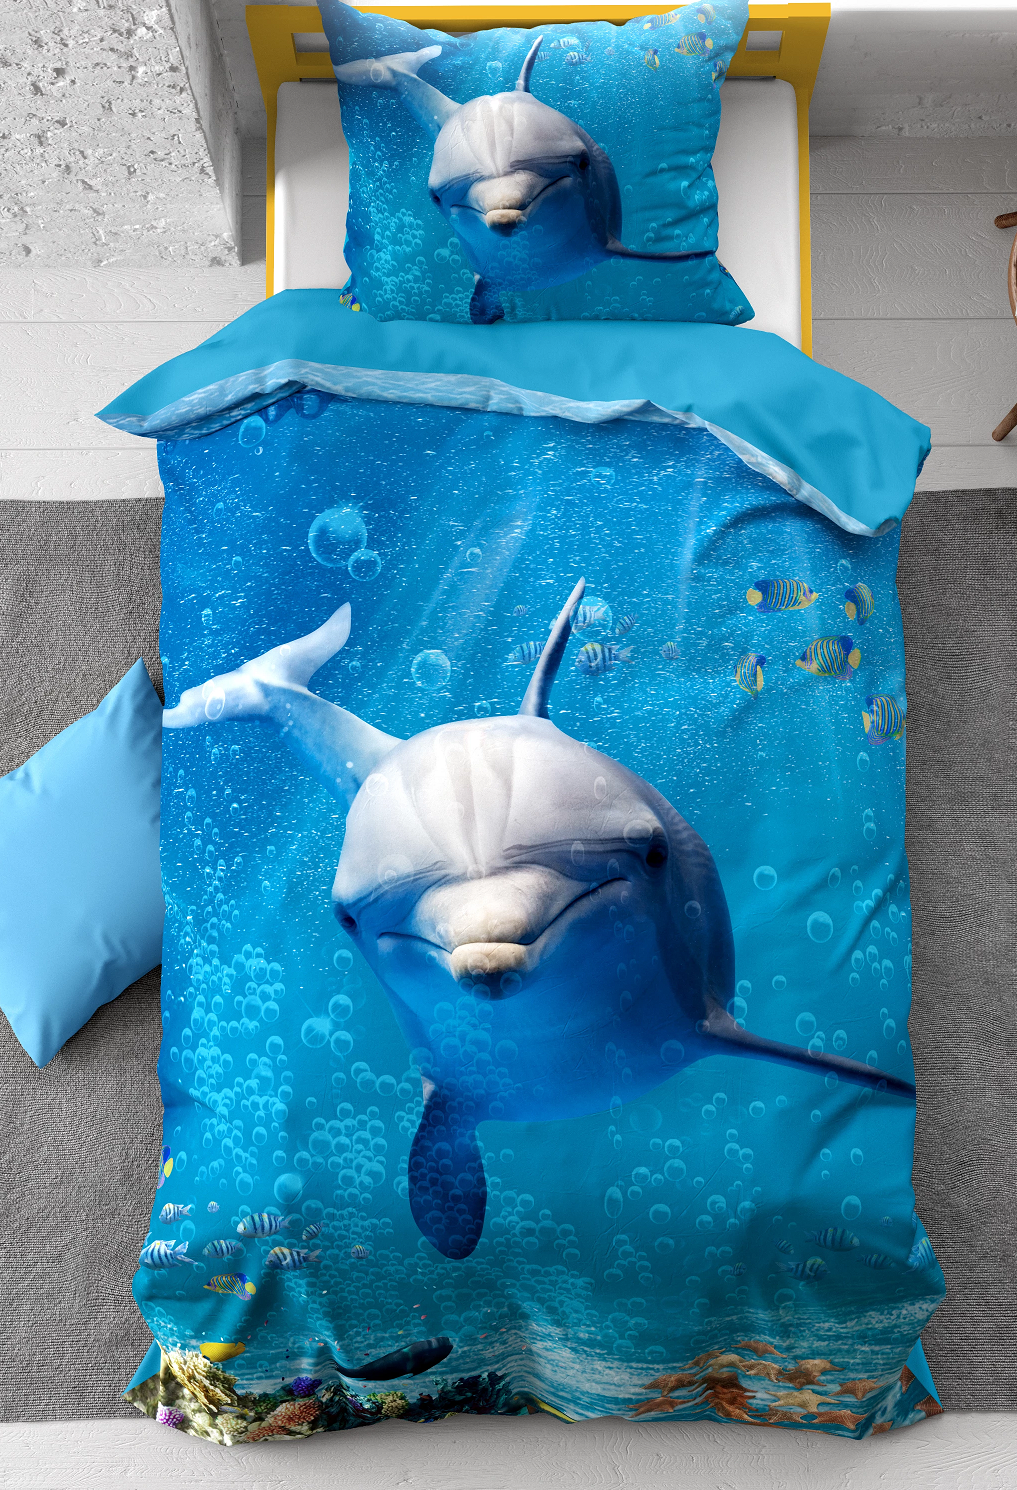 Aja vijand Uitschakelen 1-persoons kinder dekbedovertrek (dekbed hoes) blauw met dolfijn (dolphin),  tropische vissen, zeesterren en schelpen in de helder blauwe zee (water)  KATOEN eenpersoons140 x 220 cm – Blije Kids